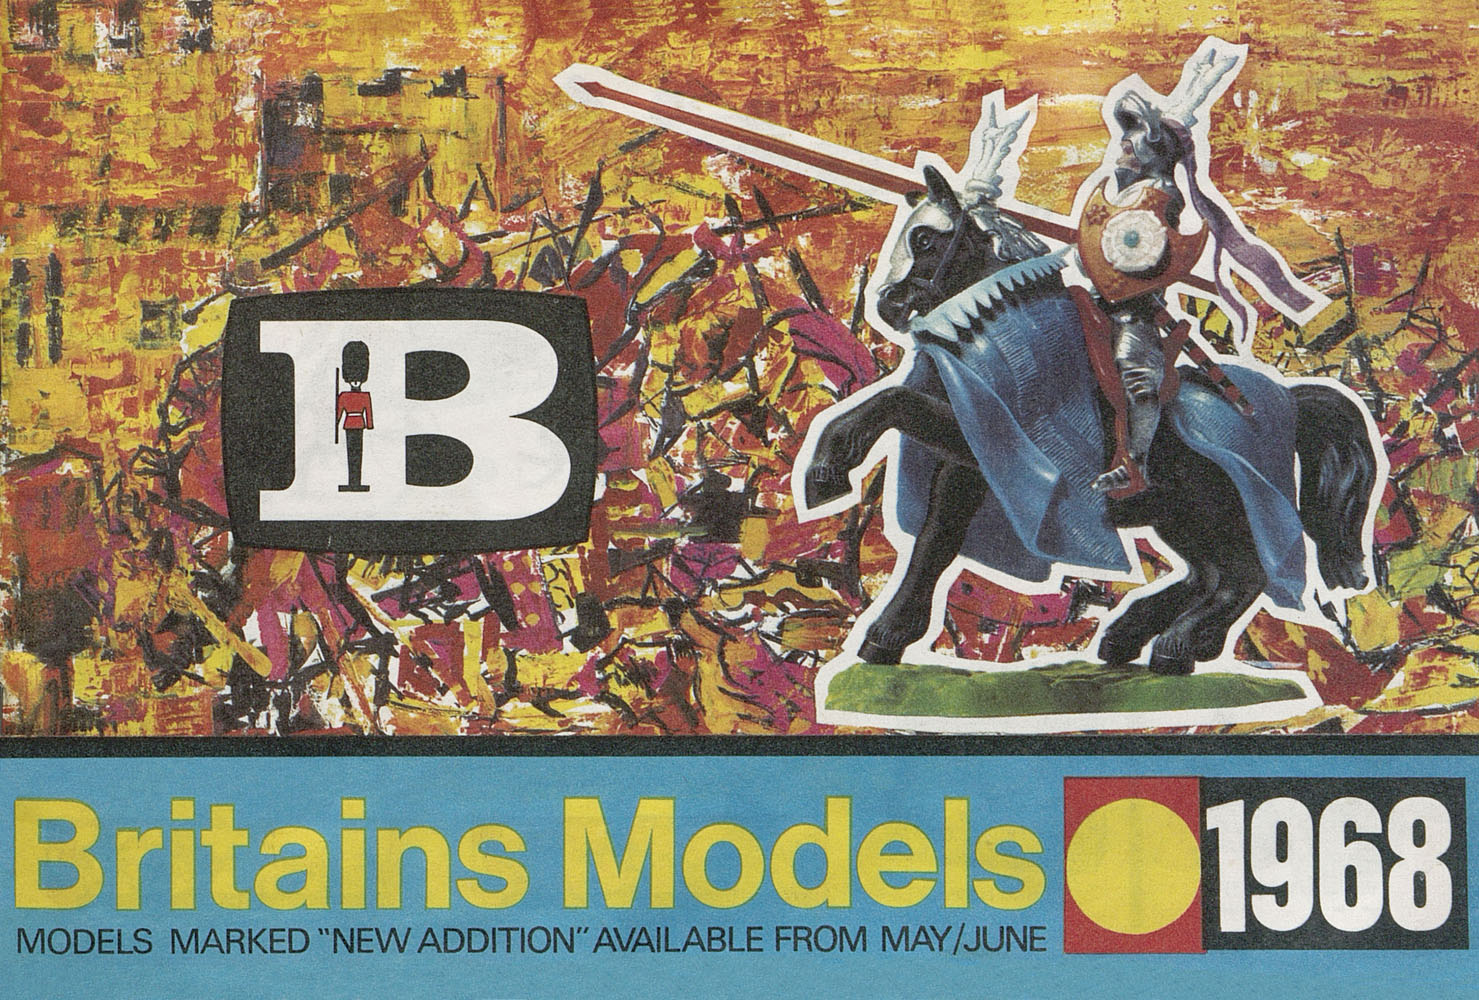 Britains Models catalogue 1968